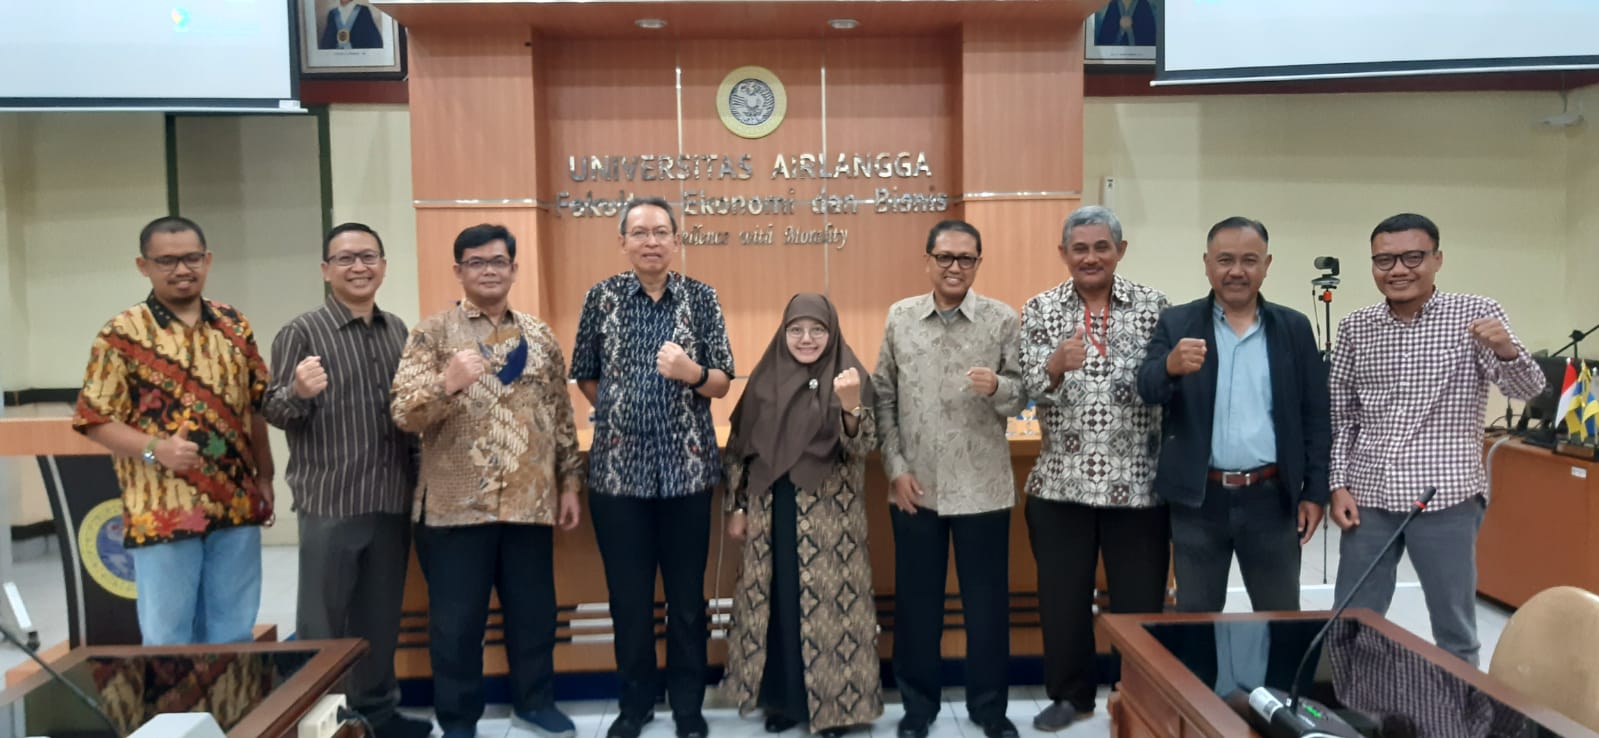 Departemen Ekonomi Syariah gagas Kolaborasi Riset Publikasi bersama Masyarakat Ekonomi Syariah (MES) Jawa Timur, dan Ikatan Ahli Ekonomi Syariah (IAEI) Jawa Timur